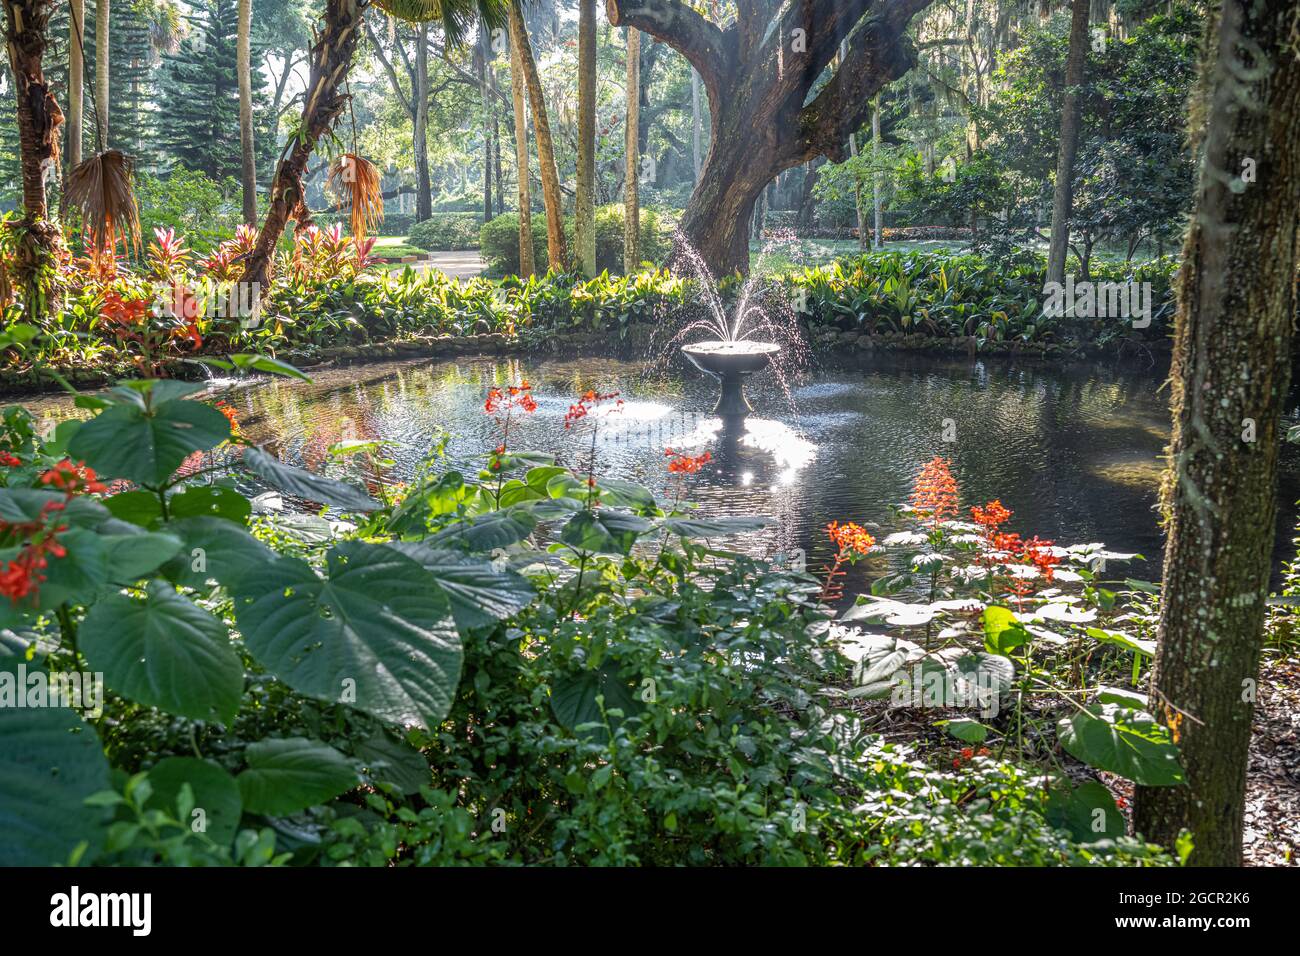 Jardins formels dans le magnifique parc national Washington Oaks Gardens à Palm Coast, Floride. (ÉTATS-UNIS) Banque D'Images